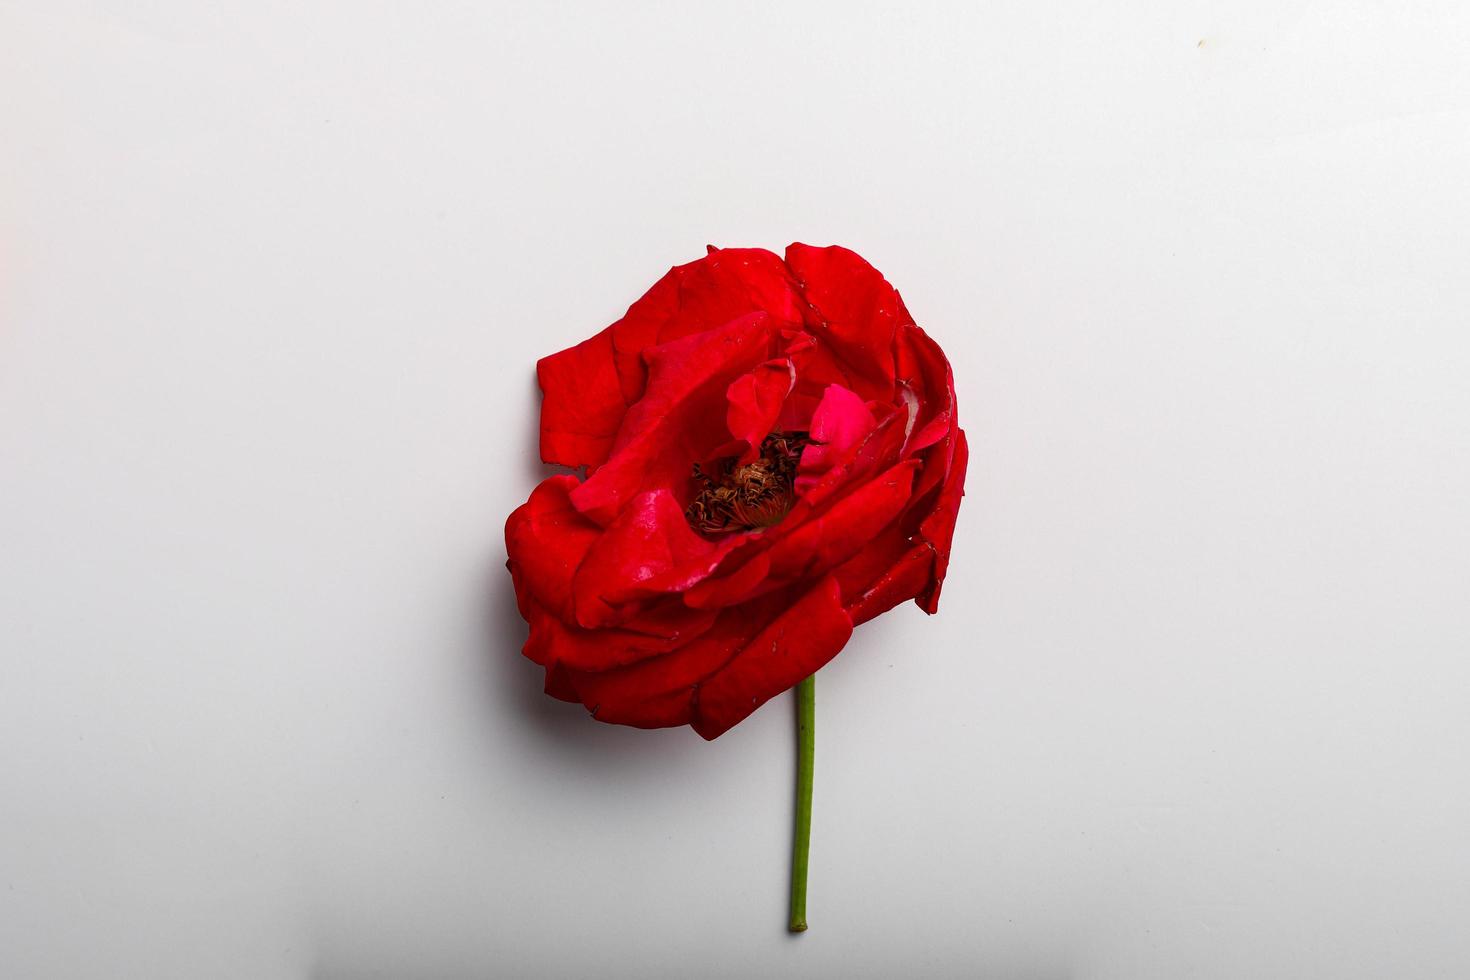 rosa vermelha em fundo branco foto